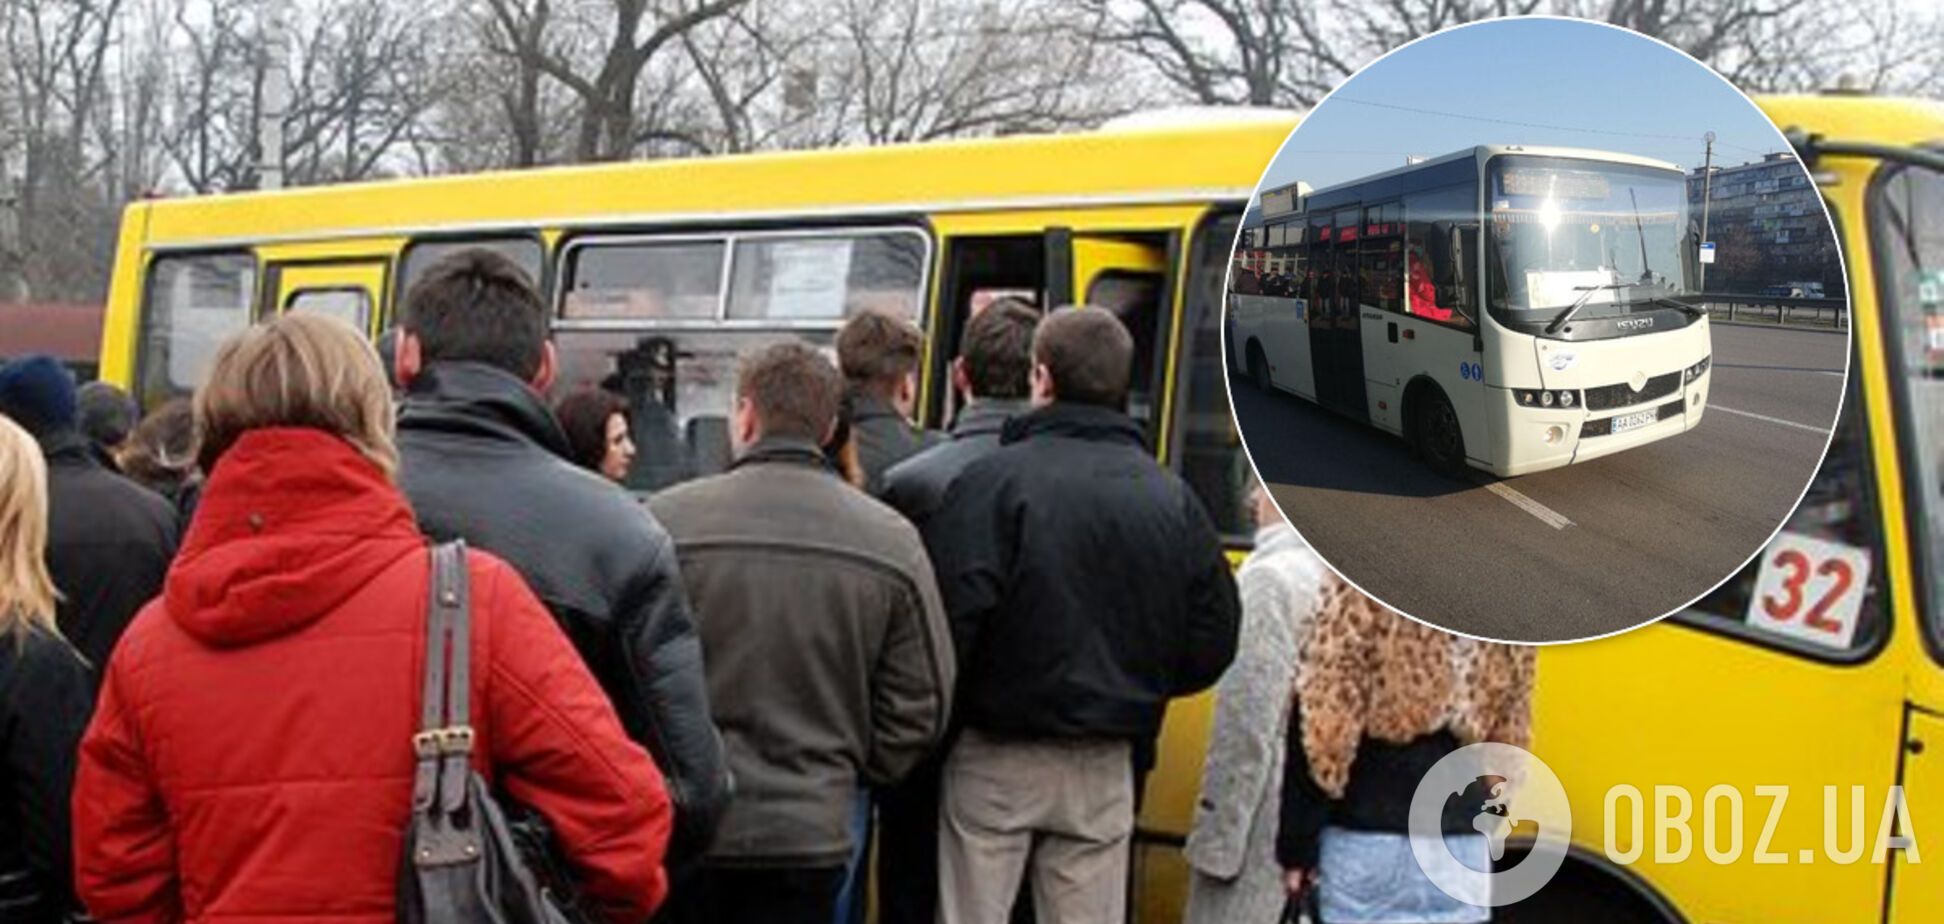 У Києві обмежили доступ до громадського транспорту: опублікована схема руху